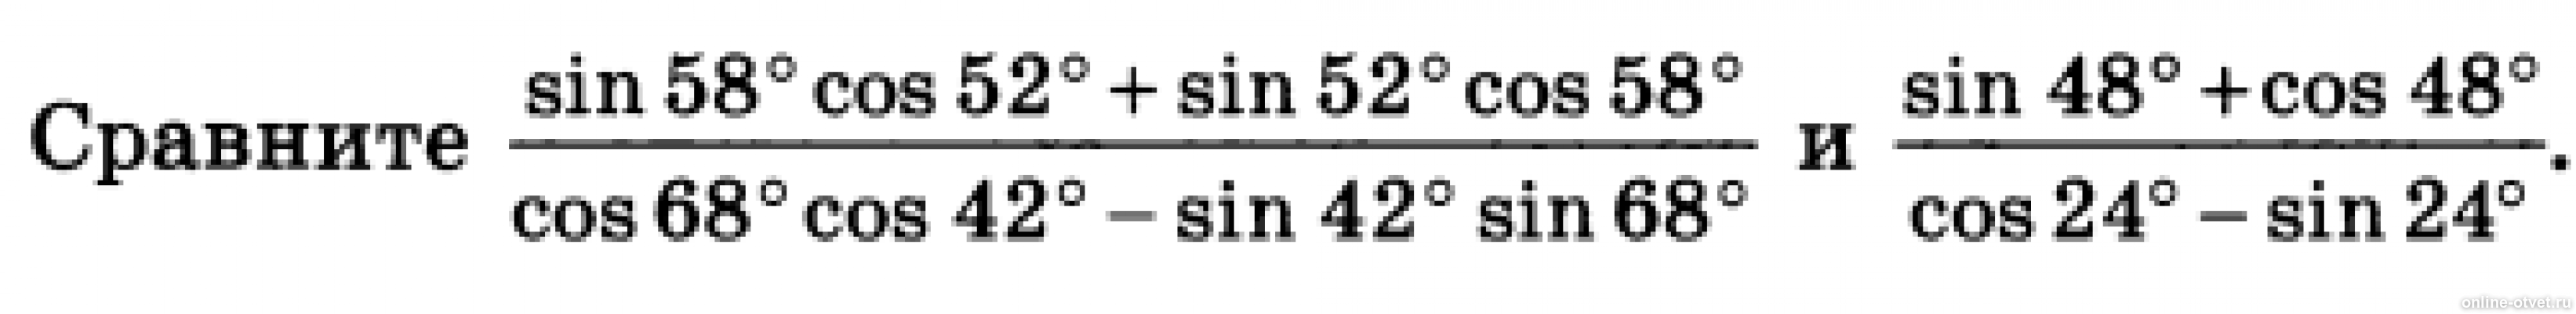 Sin 1 24. Sin58cos52+sin52cos58/cos68cos42-sin42sin68. Sin 48. Cos 58. Cos 48.